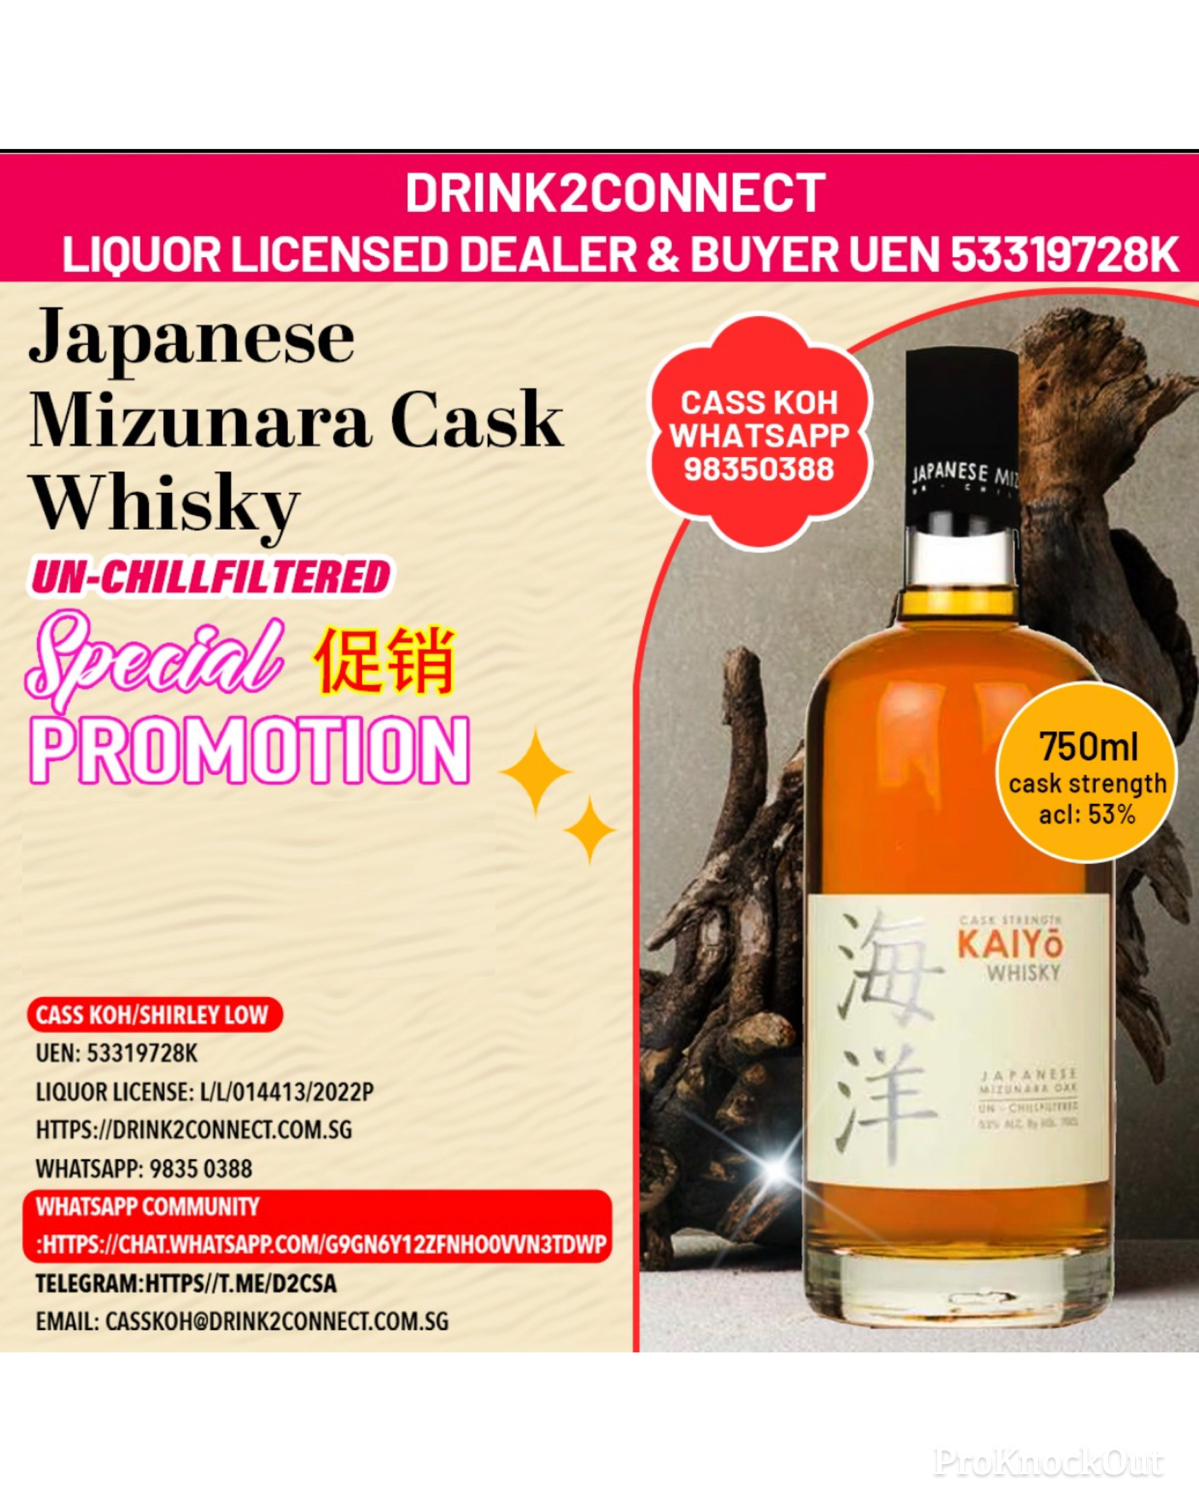 700ml Kaiyo Mizunara CASK Whisky/Japanese Whisky Sale Online/Japanese Whisky Price Online